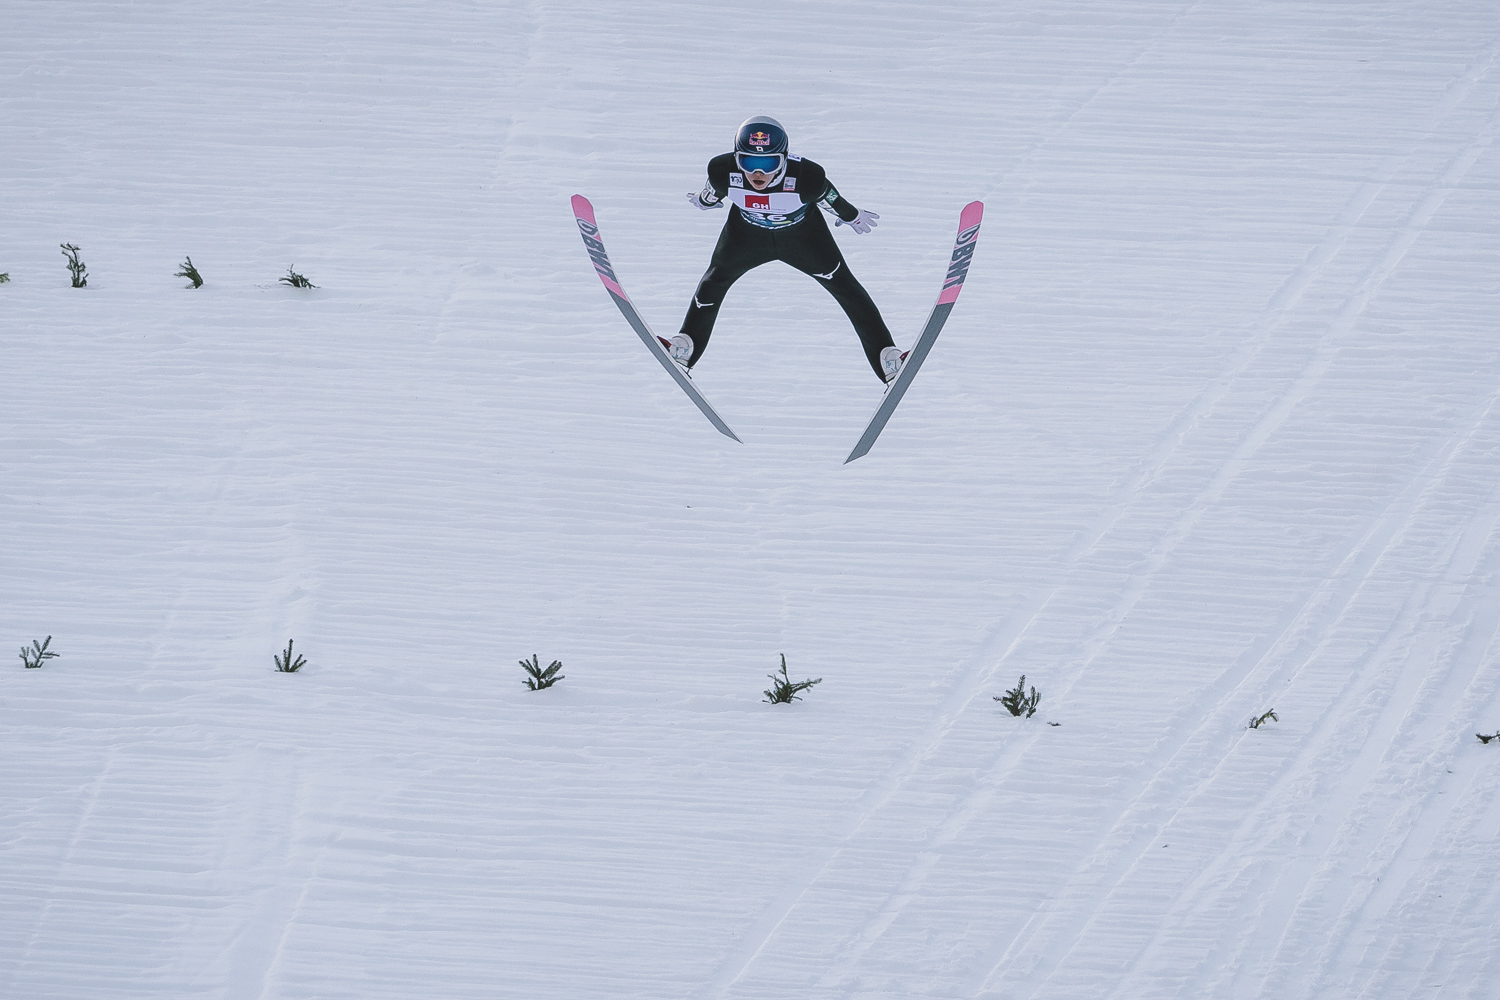 Skoki narciarskie. Nieoficjalnie: Ryoyu Kobayashi pobił rekord świata w Islandii! - Skijumping.pl